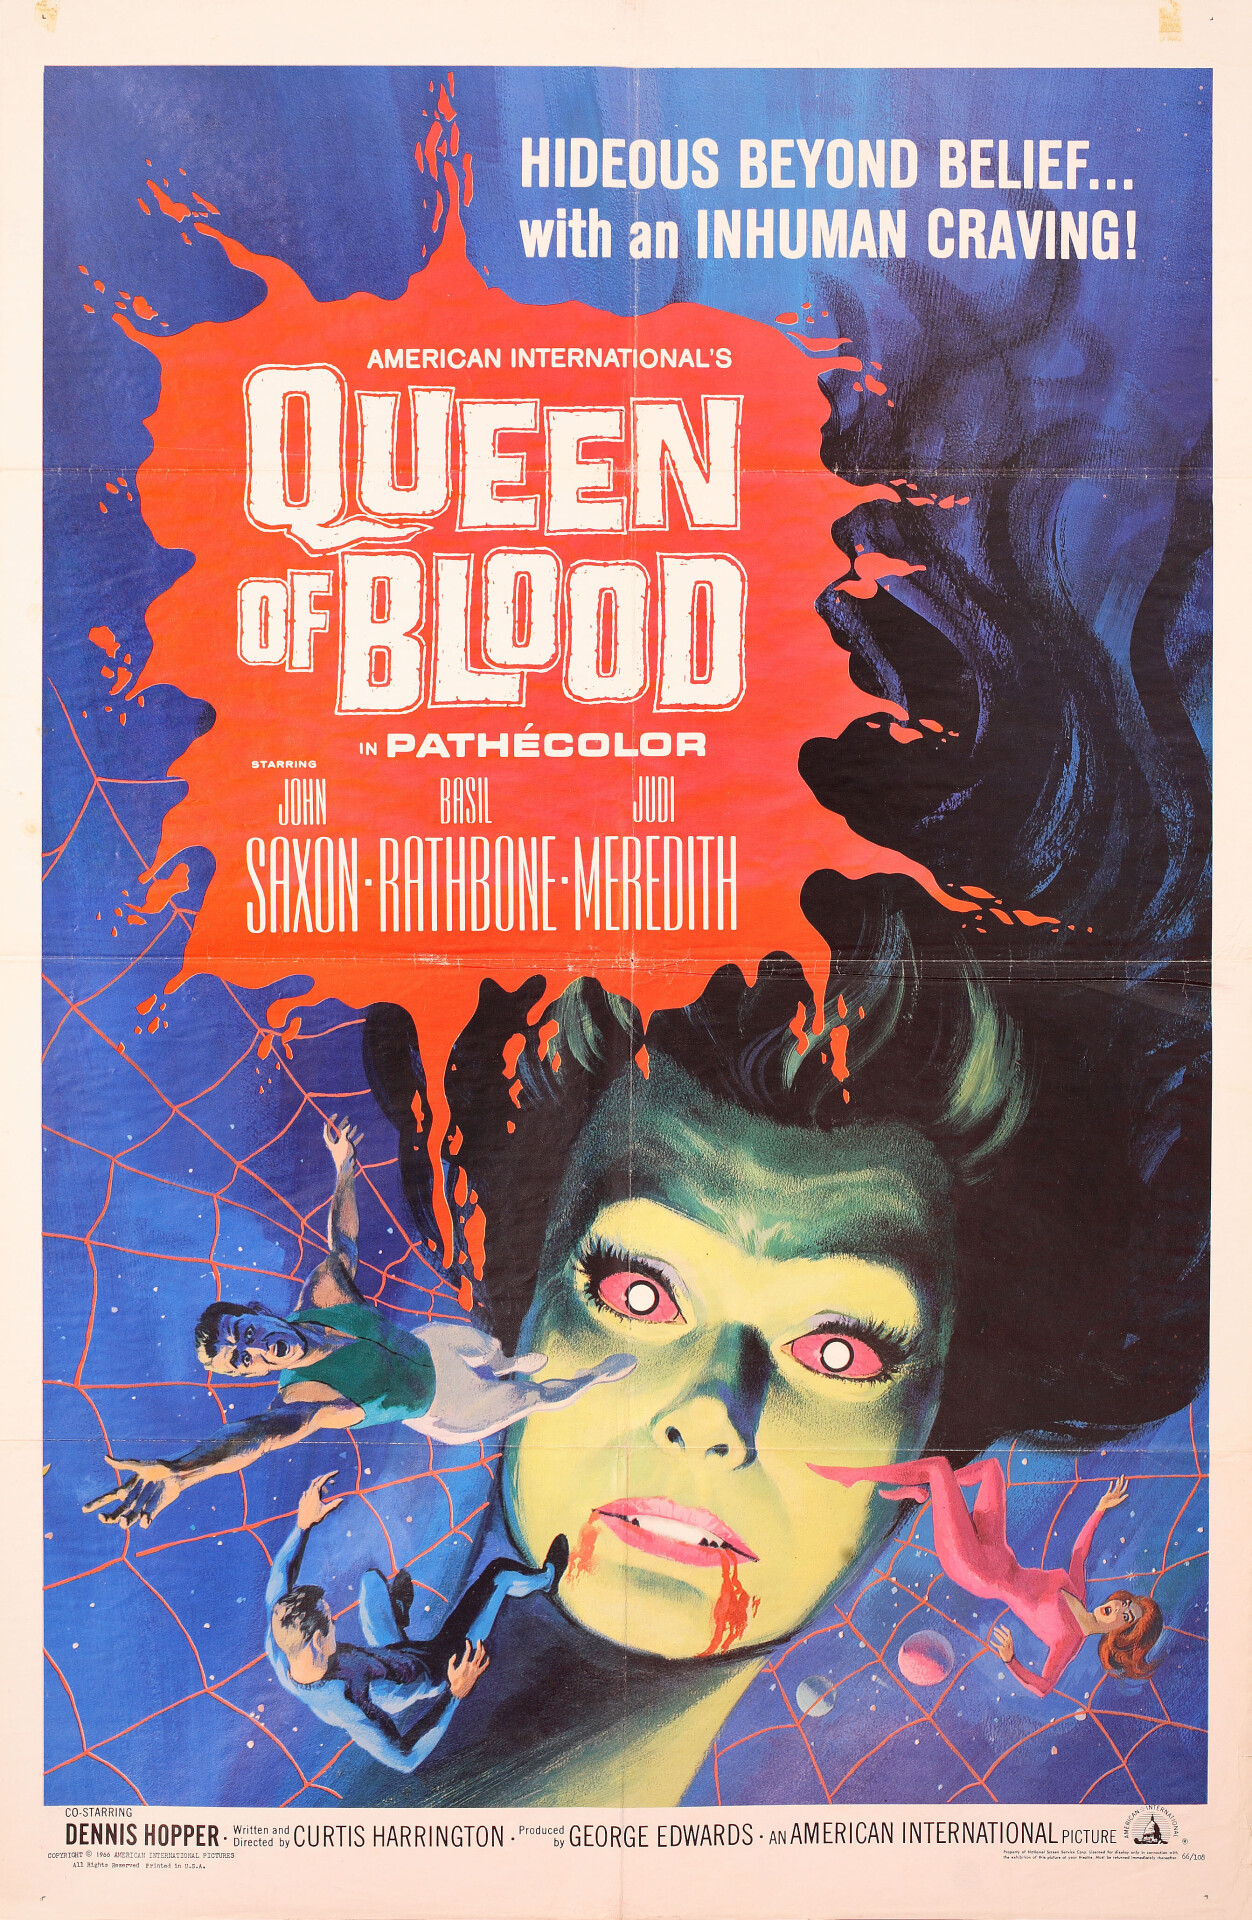 Кровавая королева (Queen of Blood, 1966), режиссёр Кертис Харрингтон, американский постер к фильму (ужасы, 1966 год)